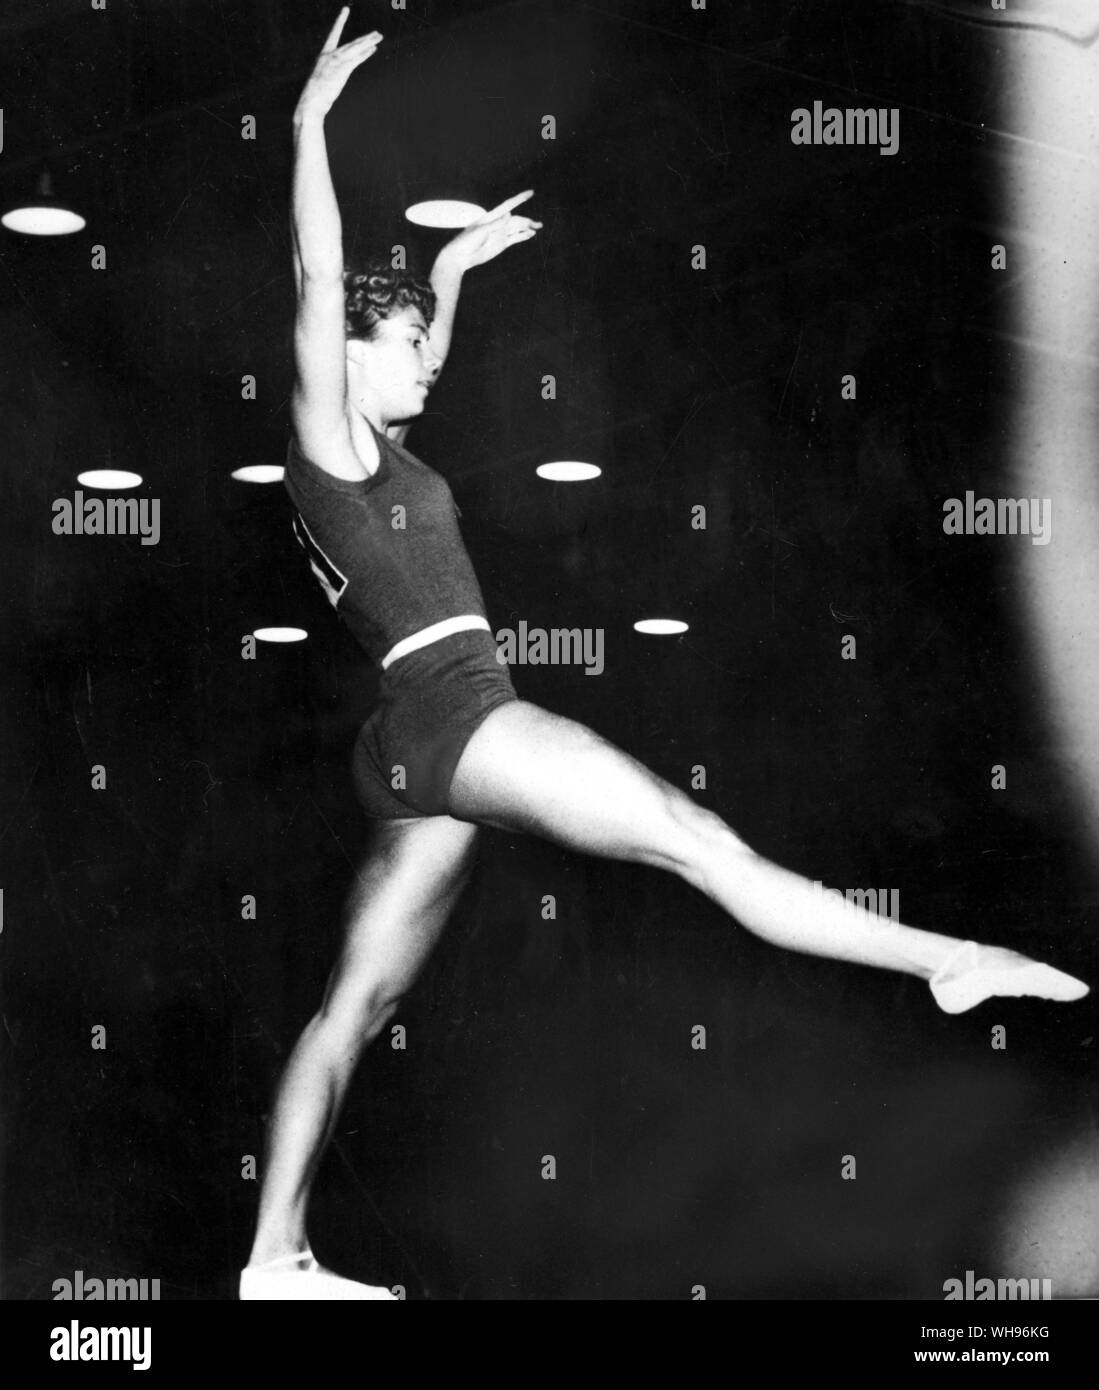 Aus., Melbourne, Olympics, 1956: Larisa Latynina (UDSSR), Gewinner von neun Gold-, fünf Silber- und vier Bronzemedaillen in der Gymnastik. Stockfoto